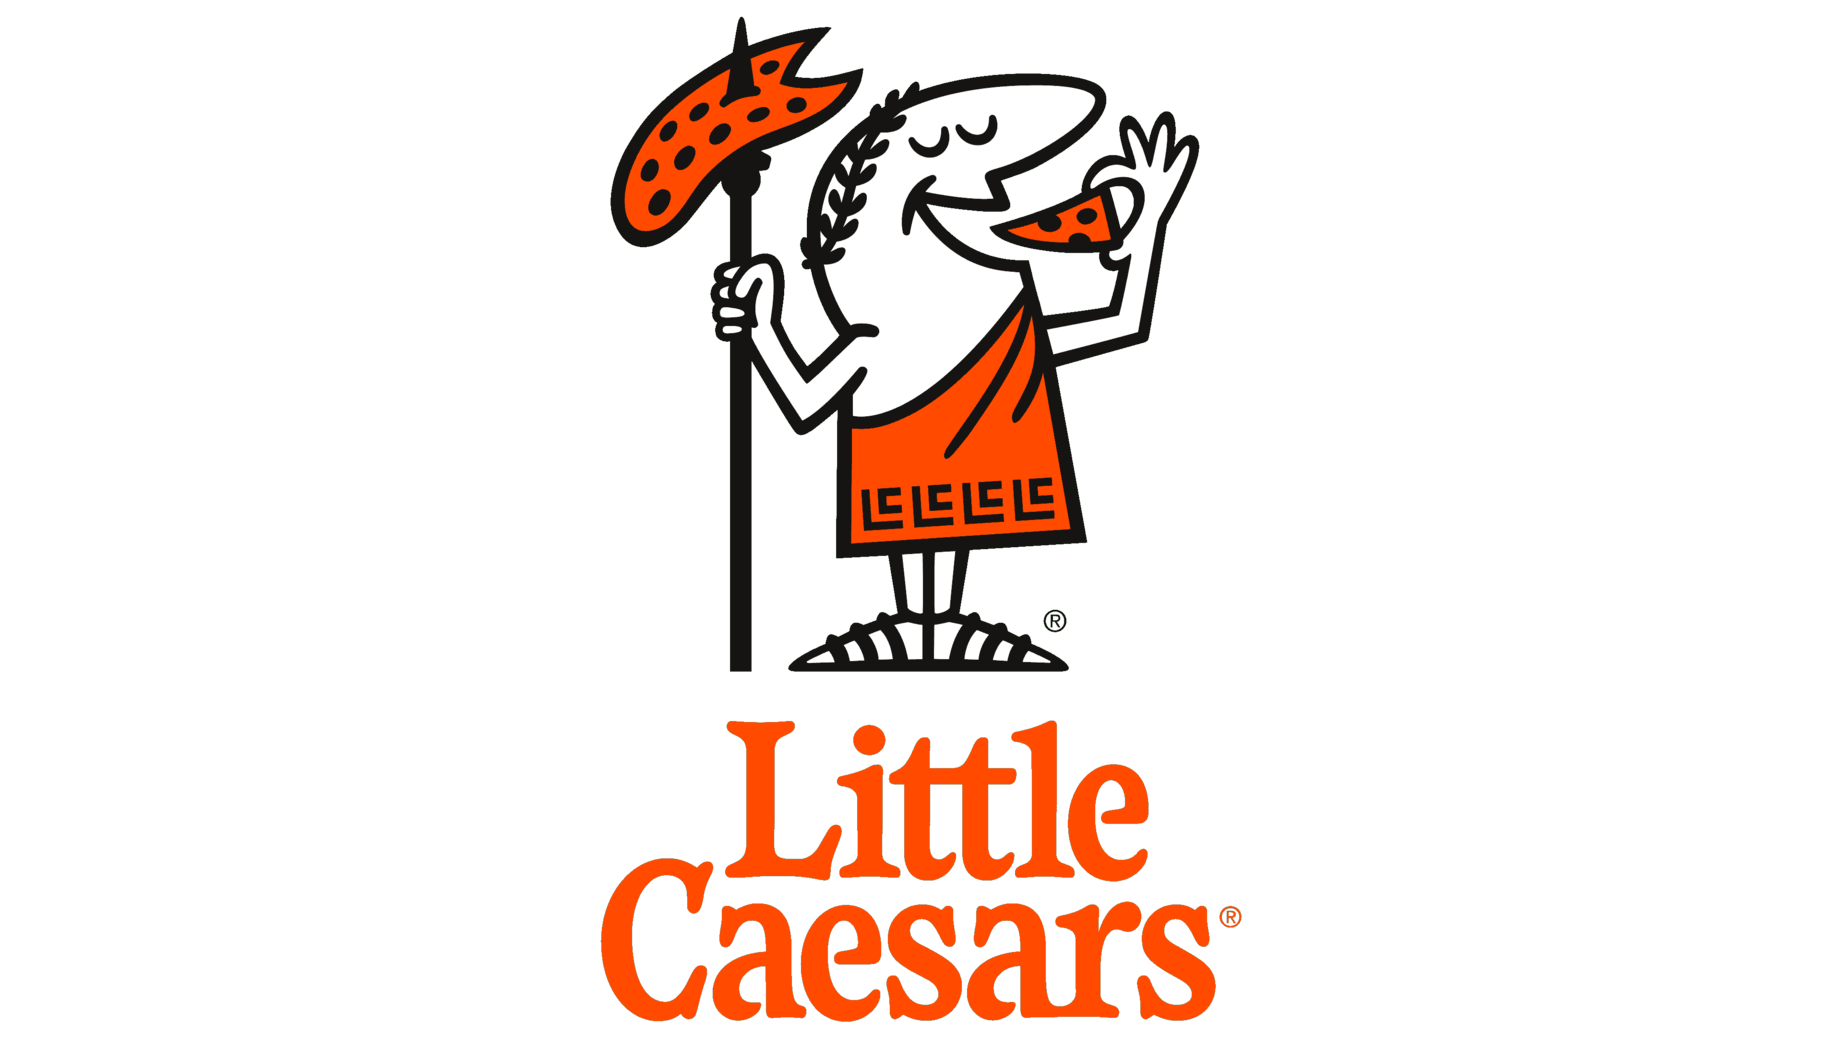 Little caesars symbol